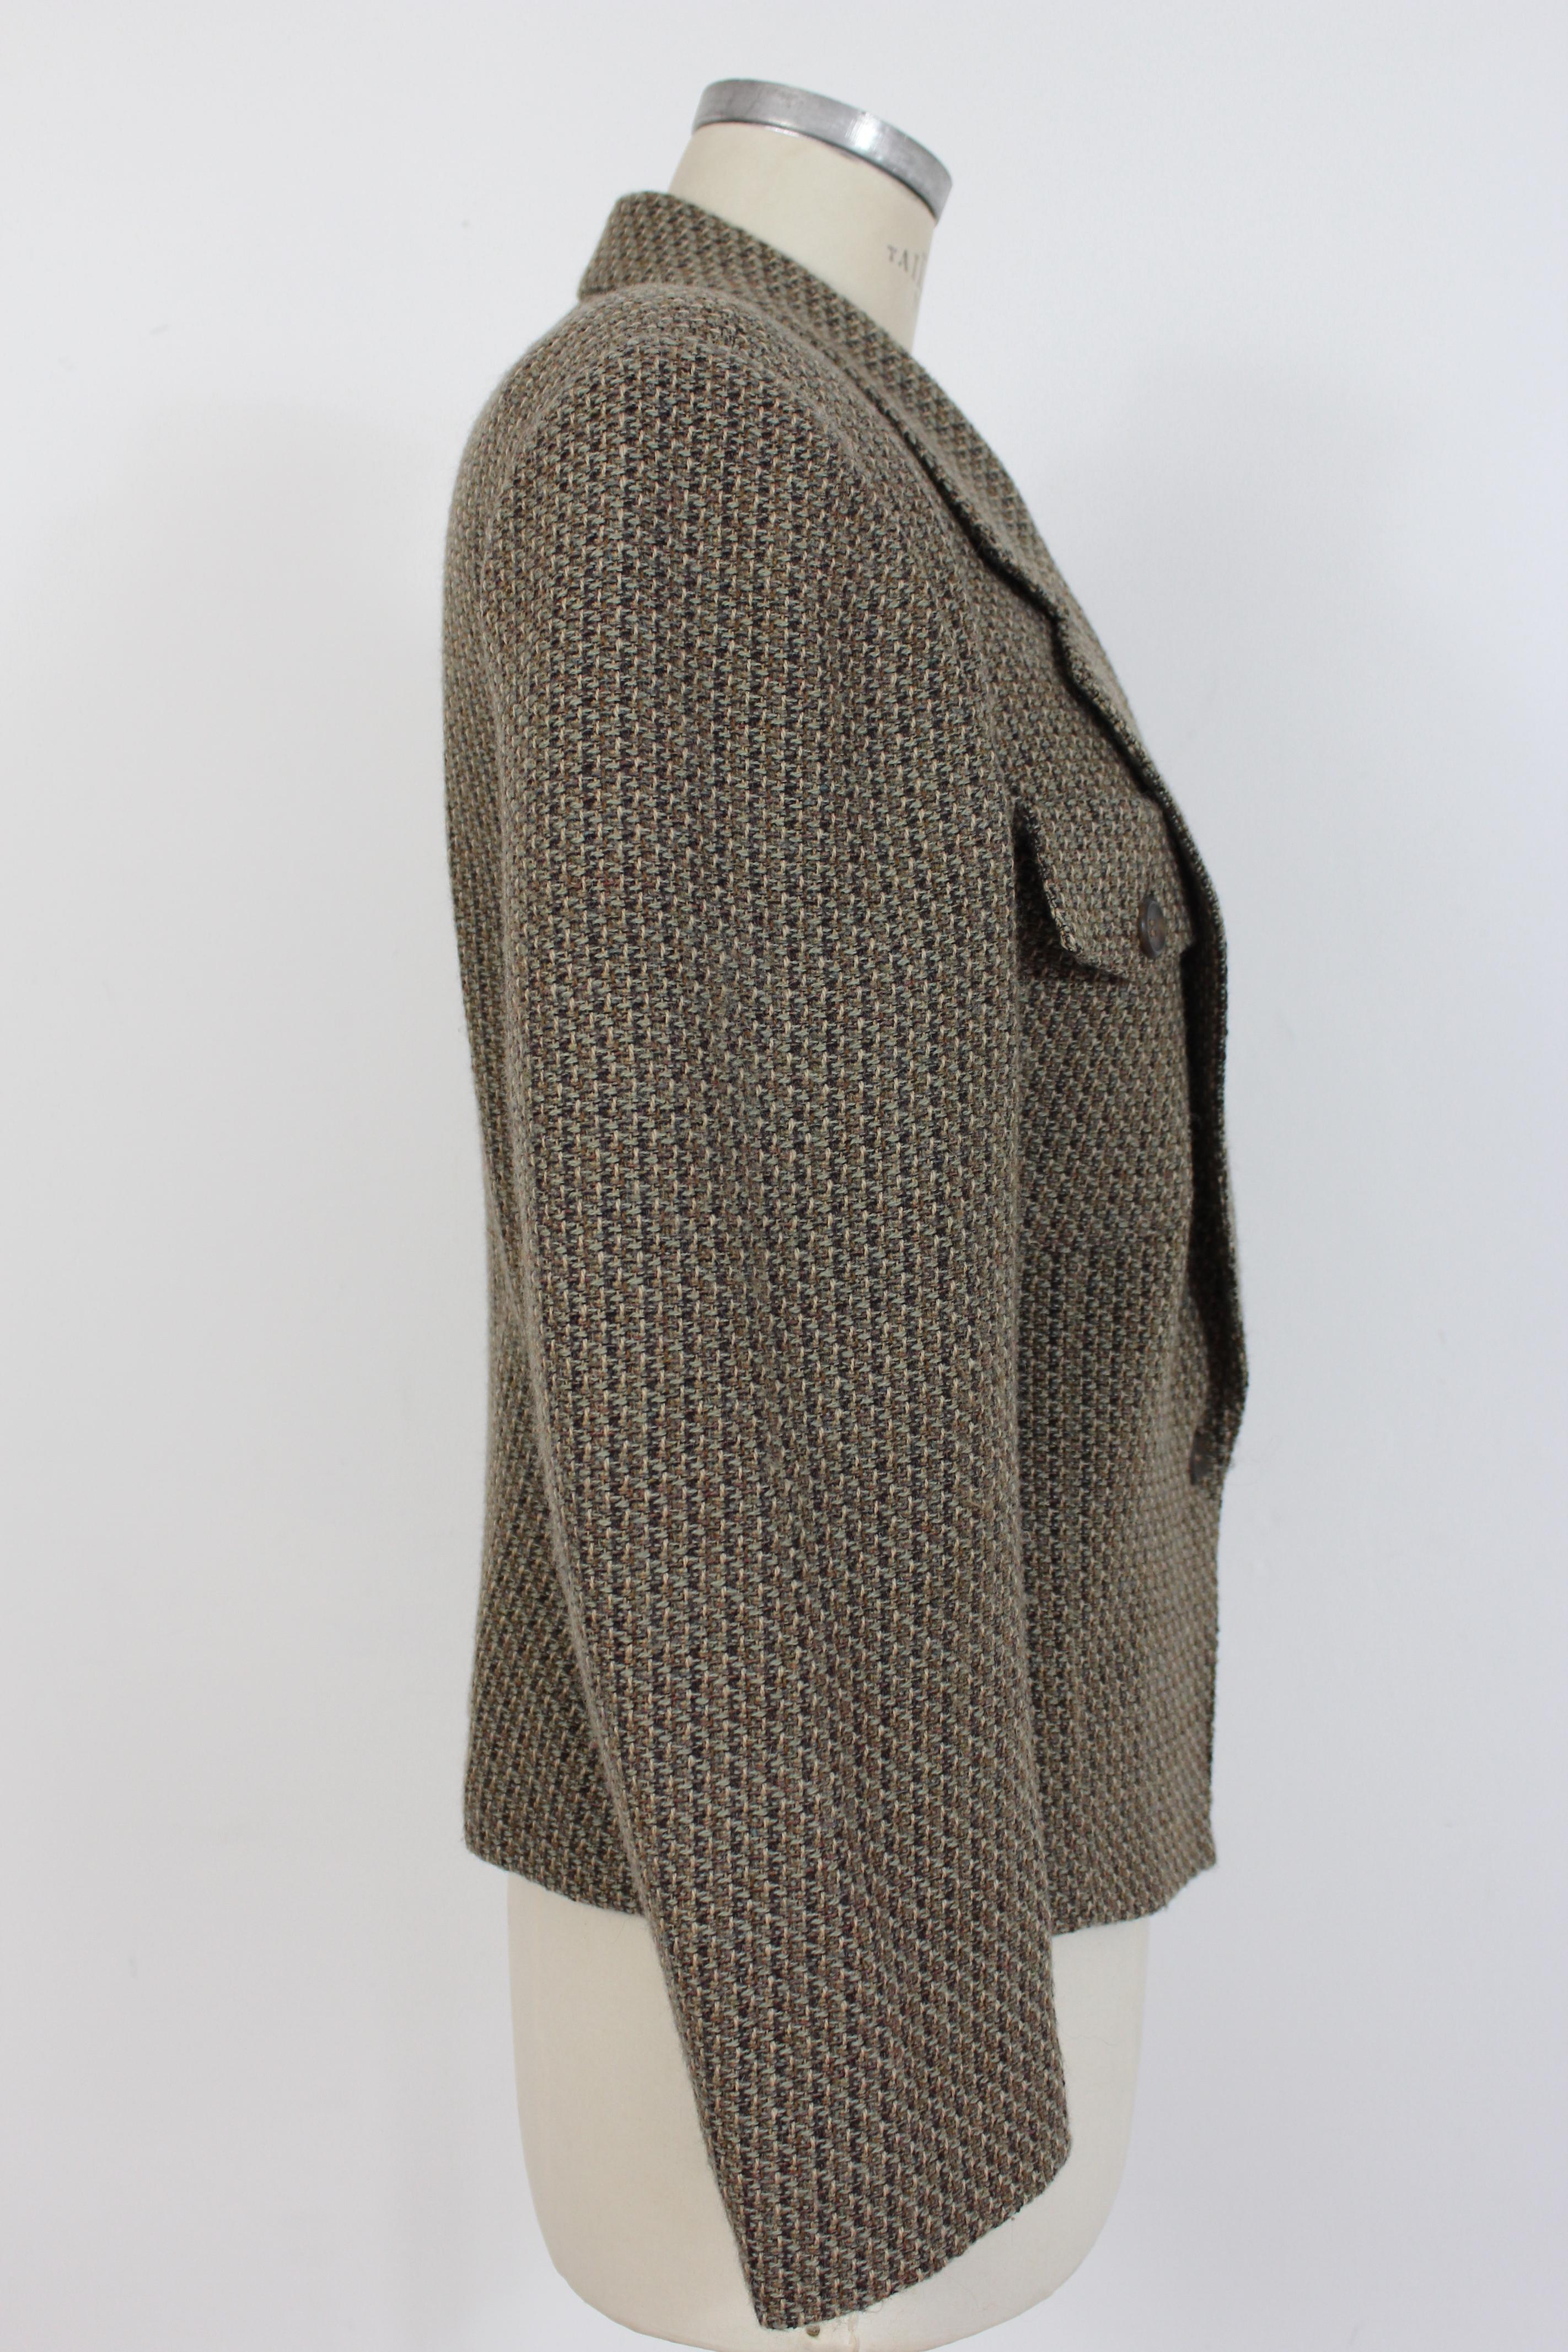 Gray Bagutta Brown Beige Wool Tweed Jacket 1980s